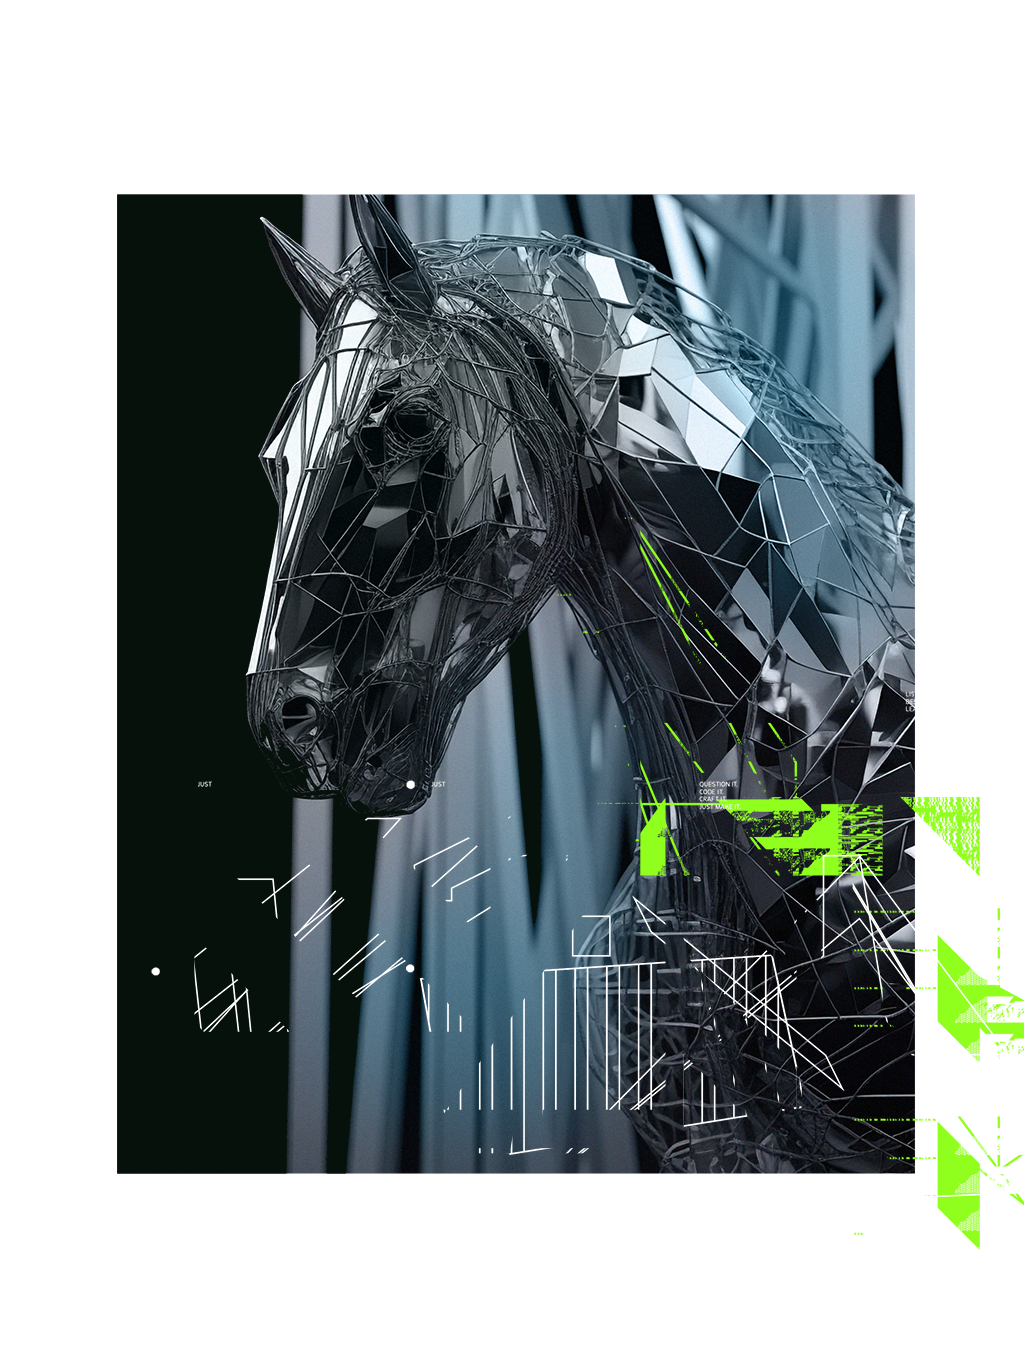 Image of abstract technologized horse head by Jung von Matt NECKAR.